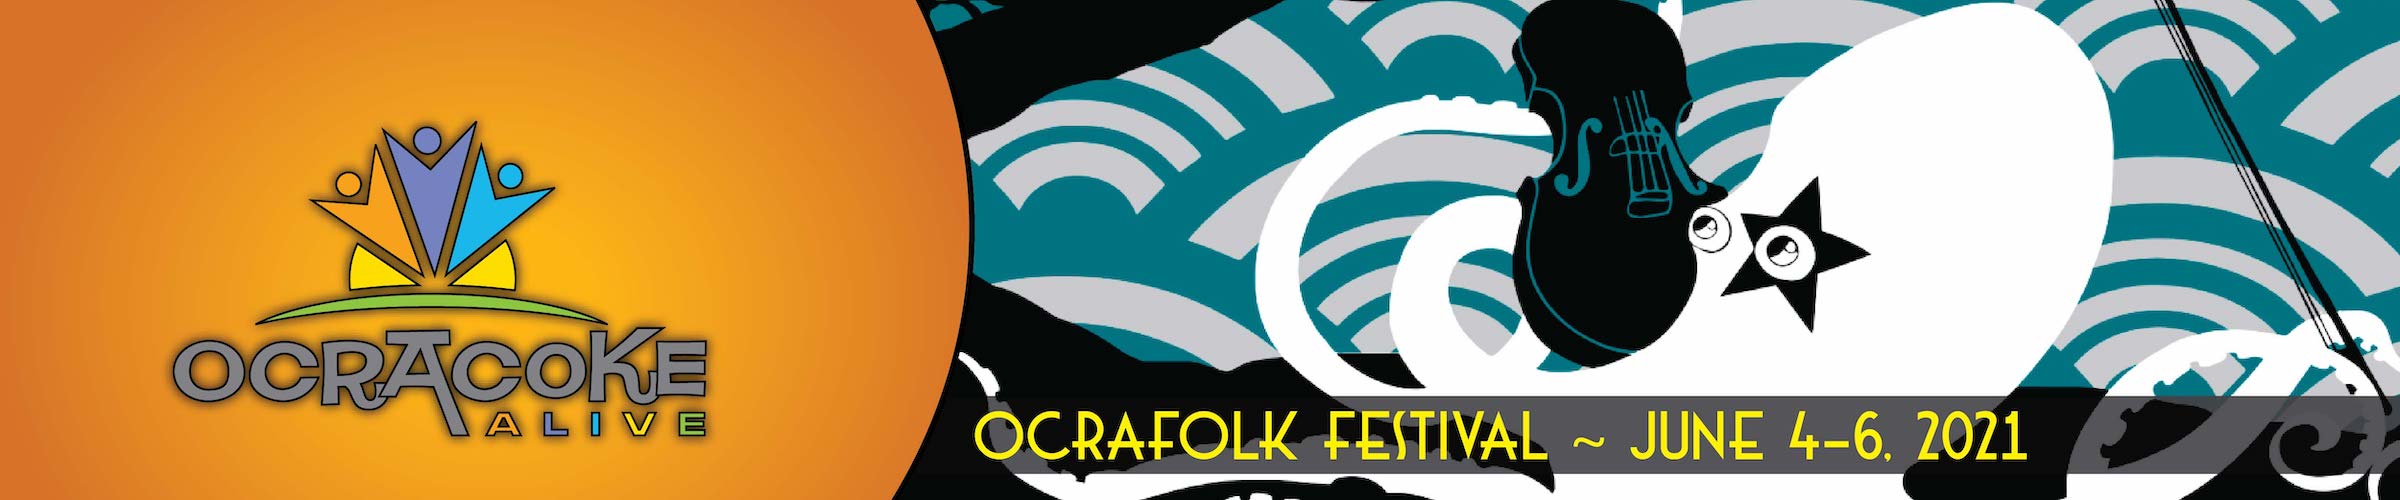 2021 Ocrafolk Festival